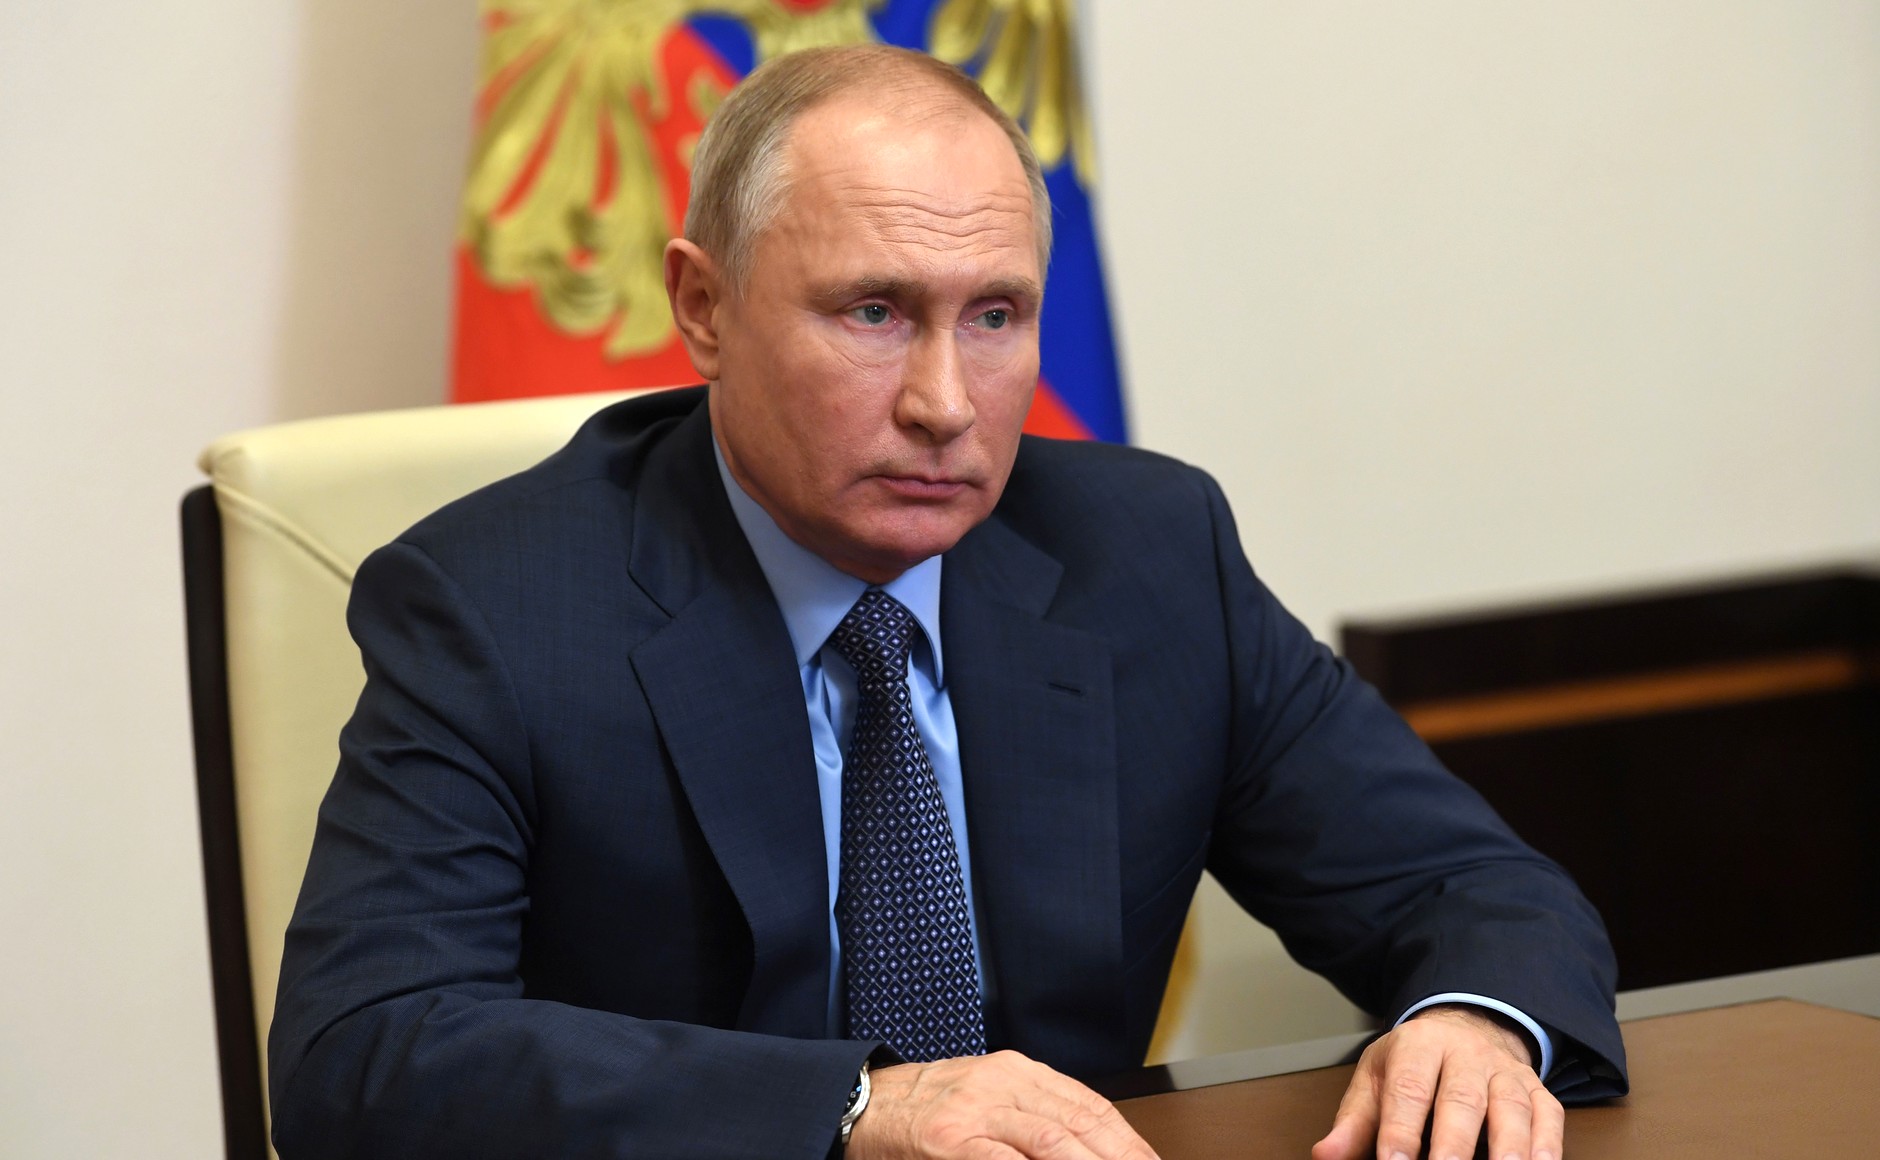 File:Vladimir Putin 19-01-2021.jpg - Wikimedia Commons